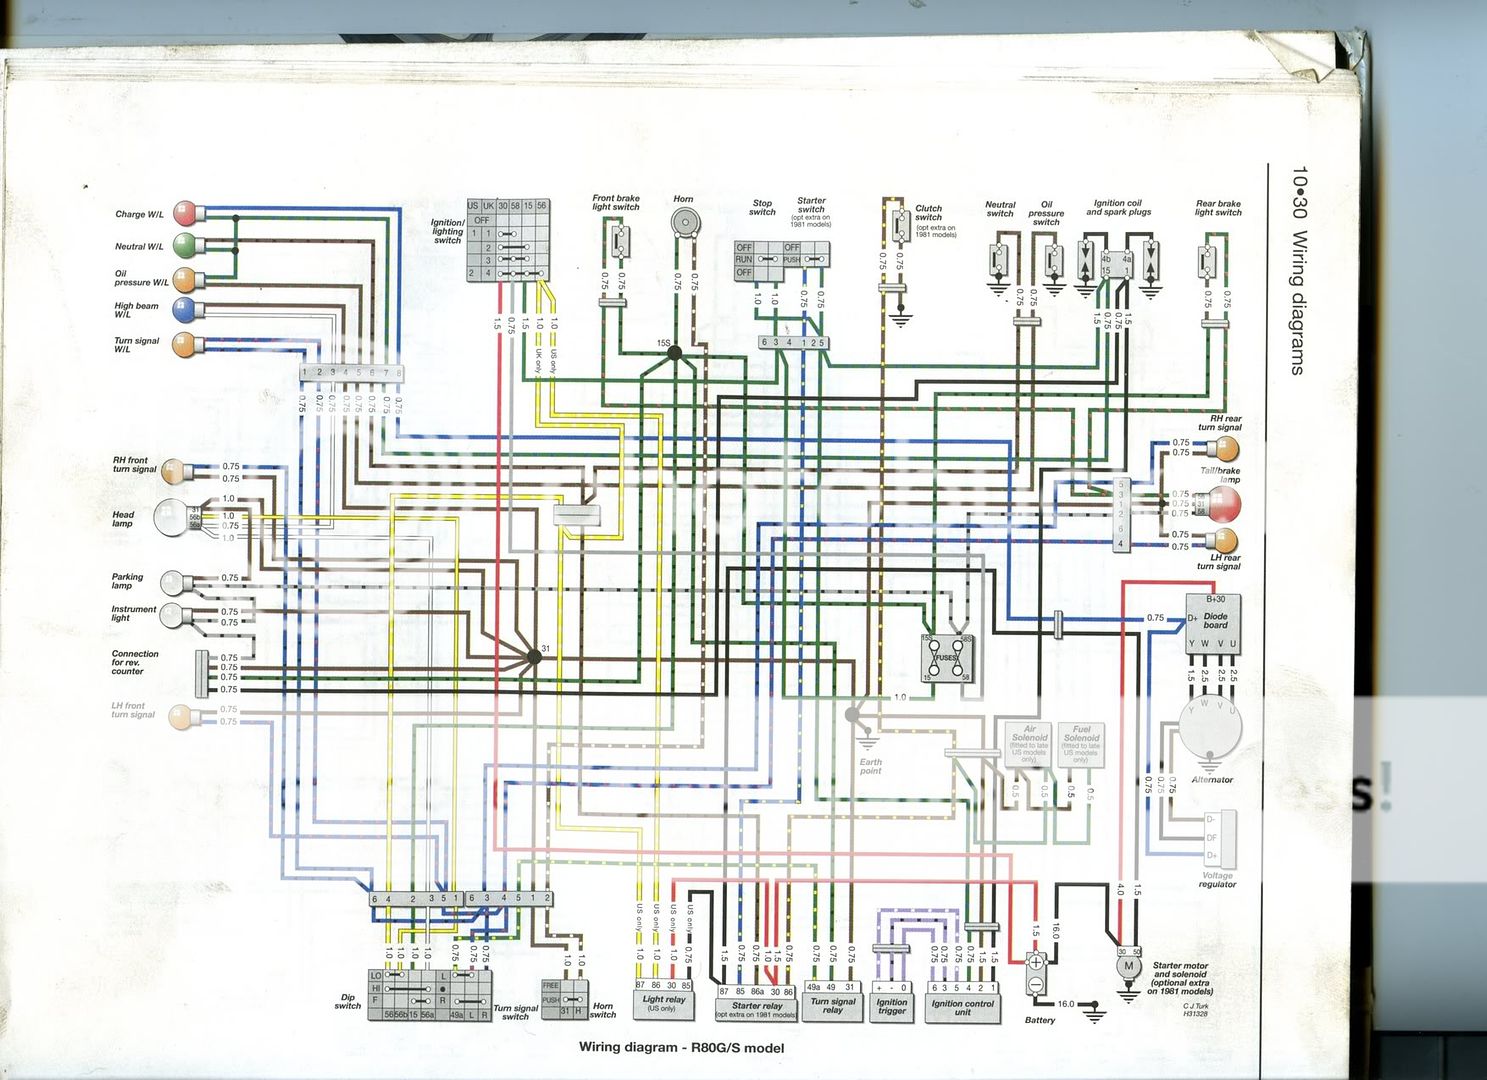 Bmw f650gs dakar wiring diagram